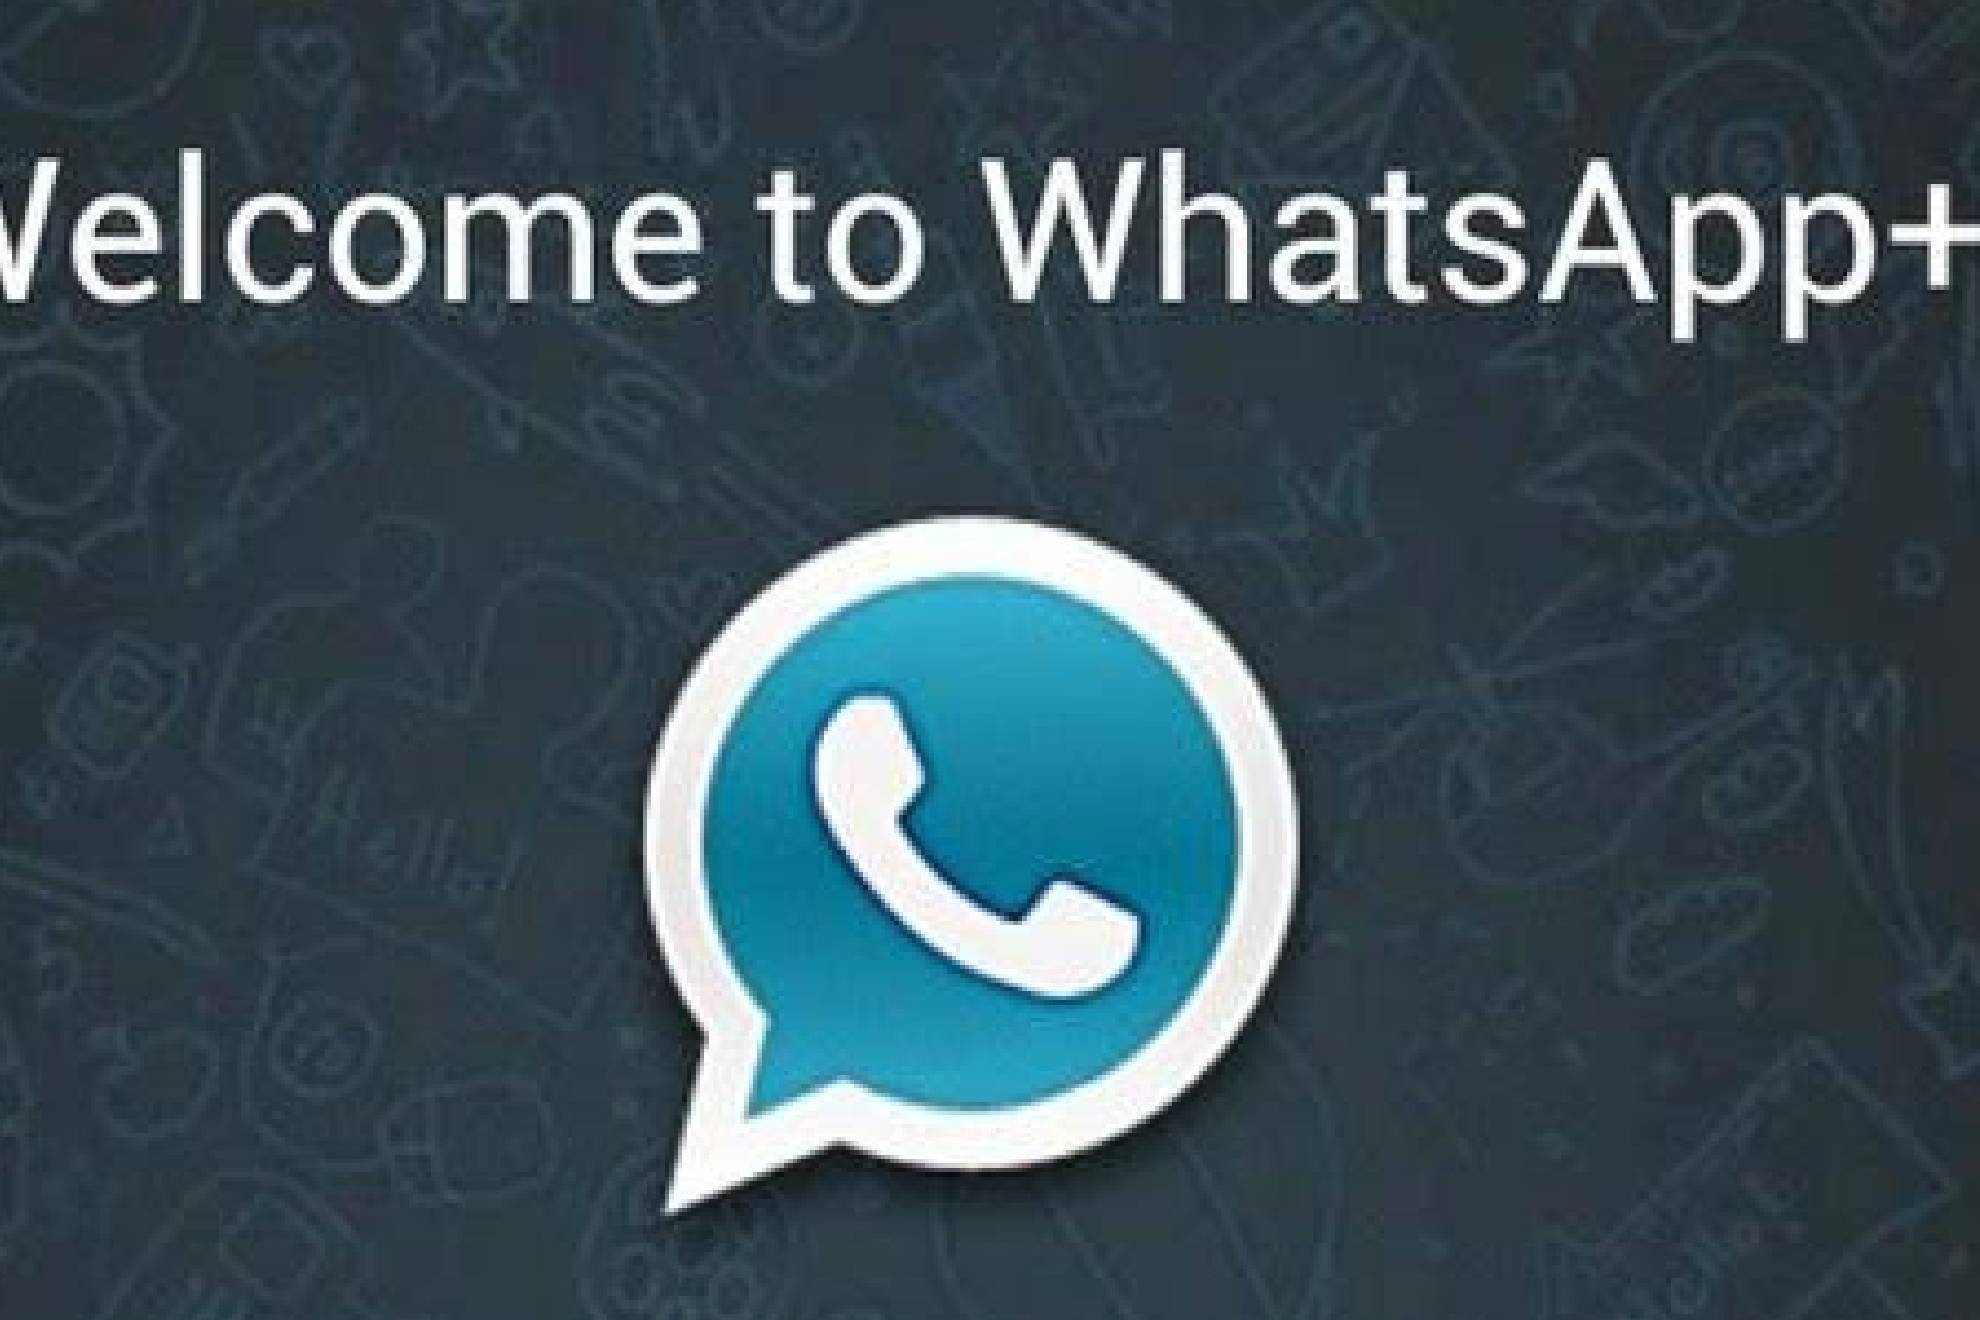 WhatsApp Plus es de las más buscadas por los usuarios